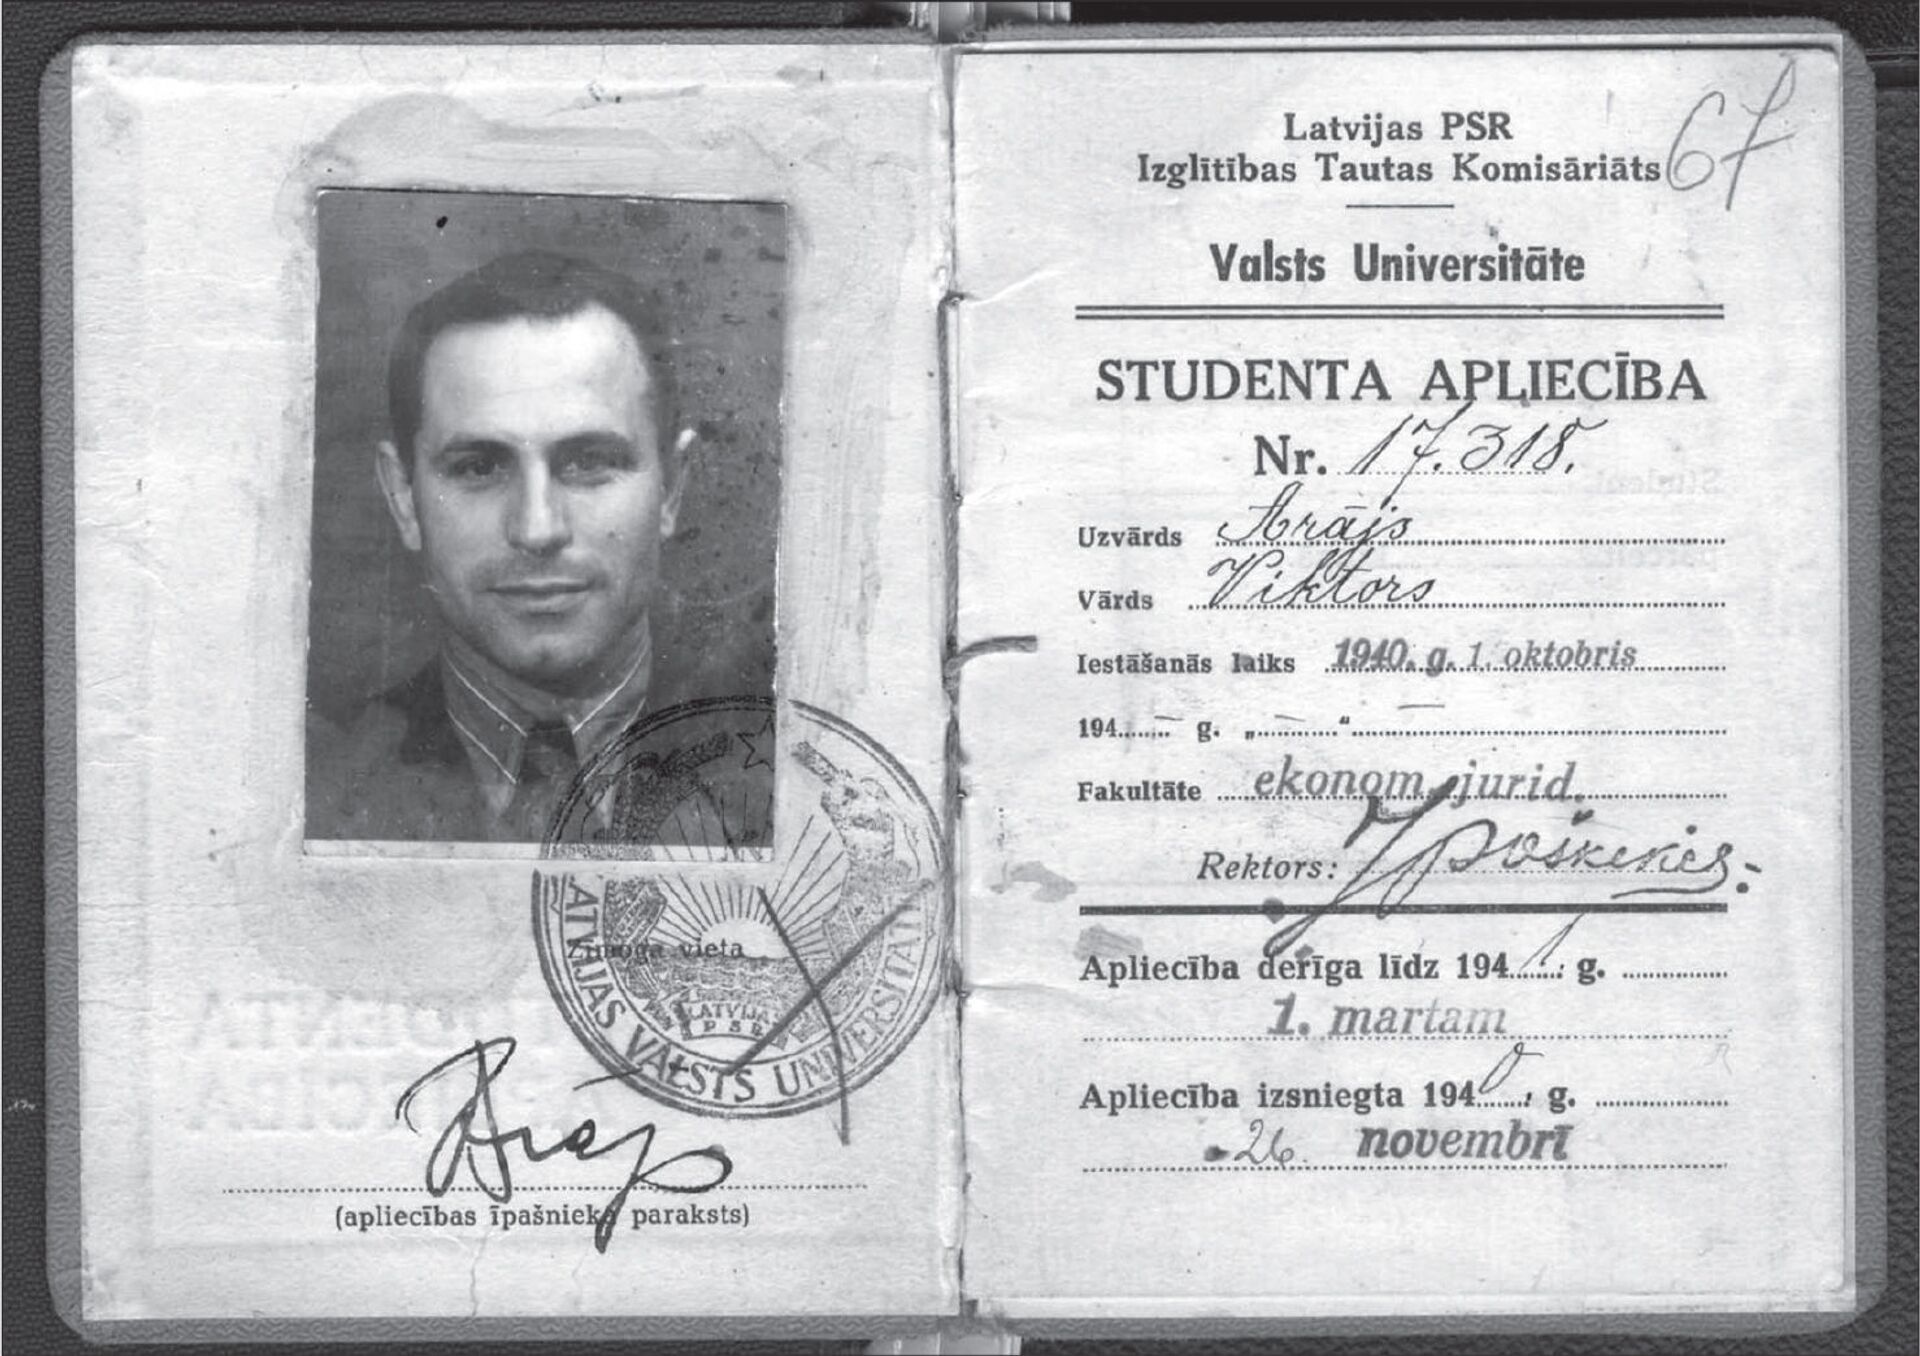 Студенческий билет Виктора Арайса из материалов Латвийского государственного исторического архива - Sputnik Латвия, 1920, 01.06.2021